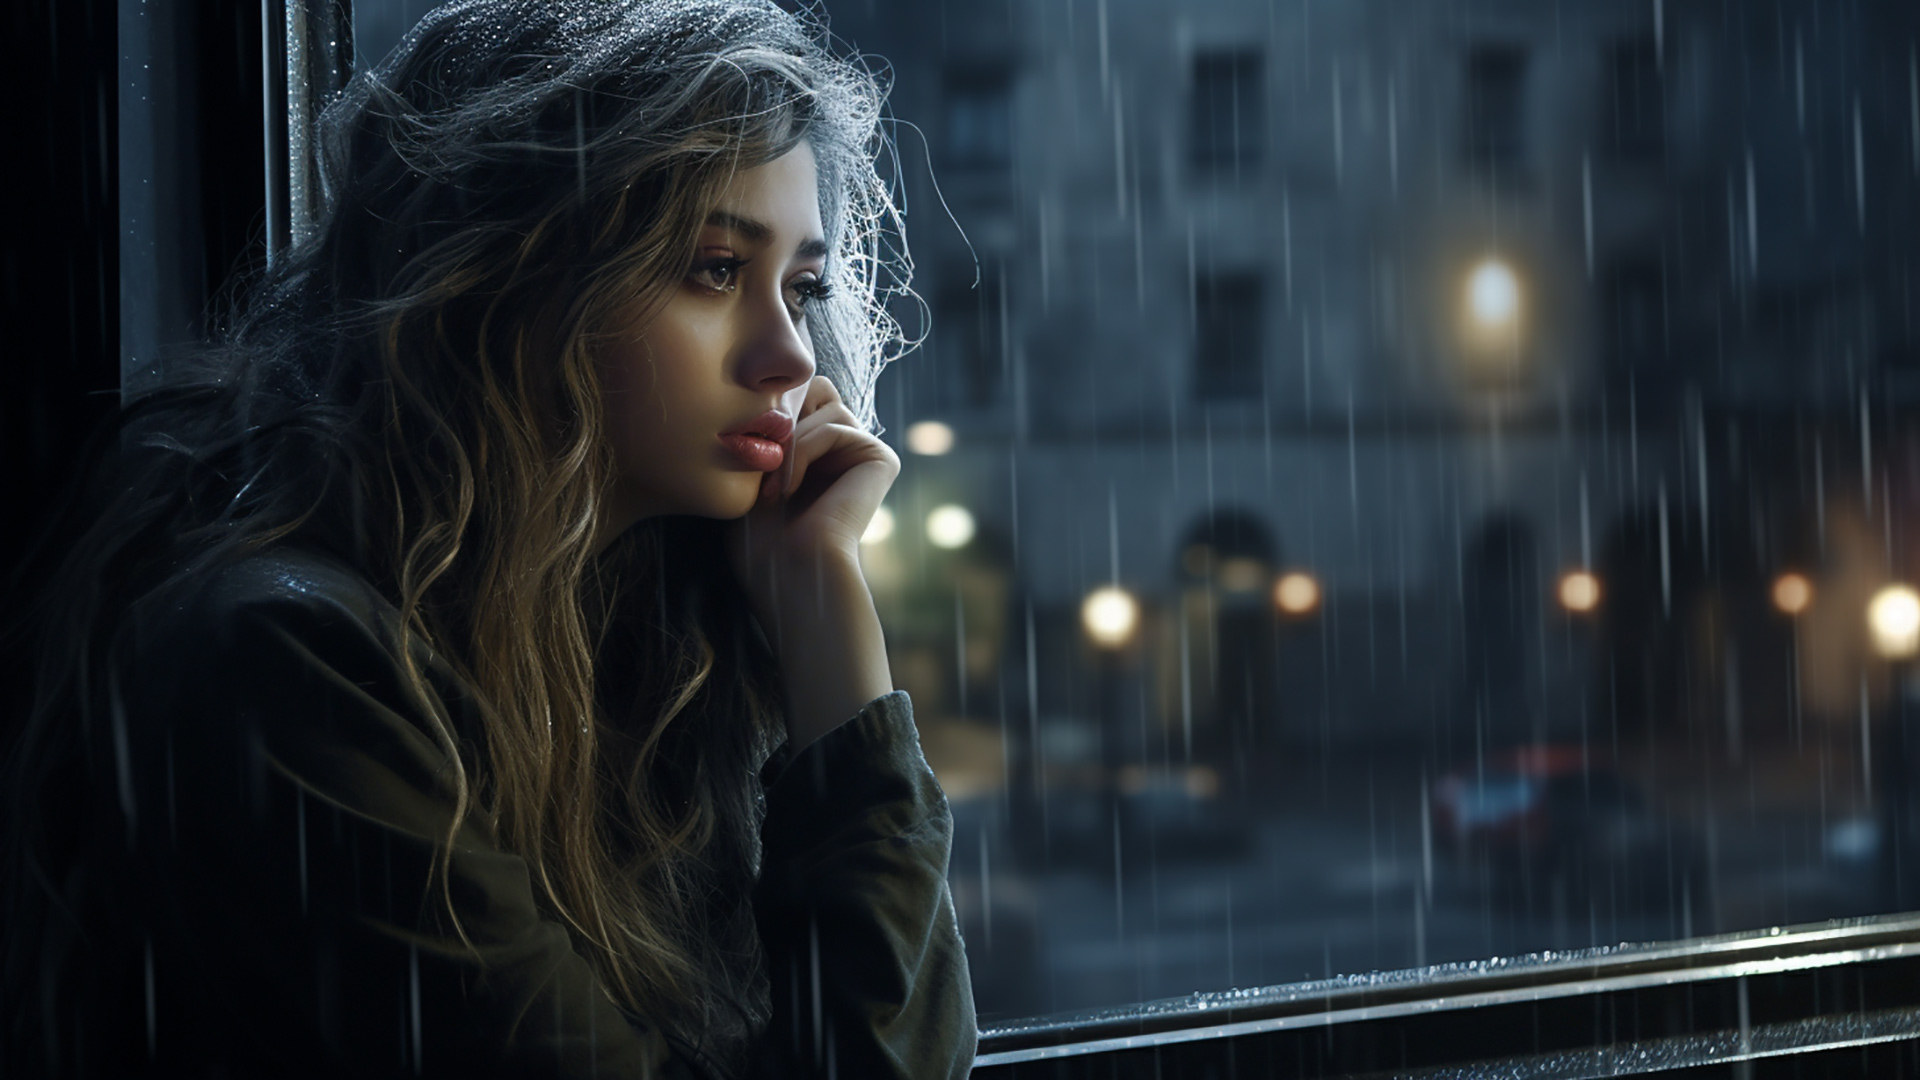 Rainy view with girl in window desktop wallpaper